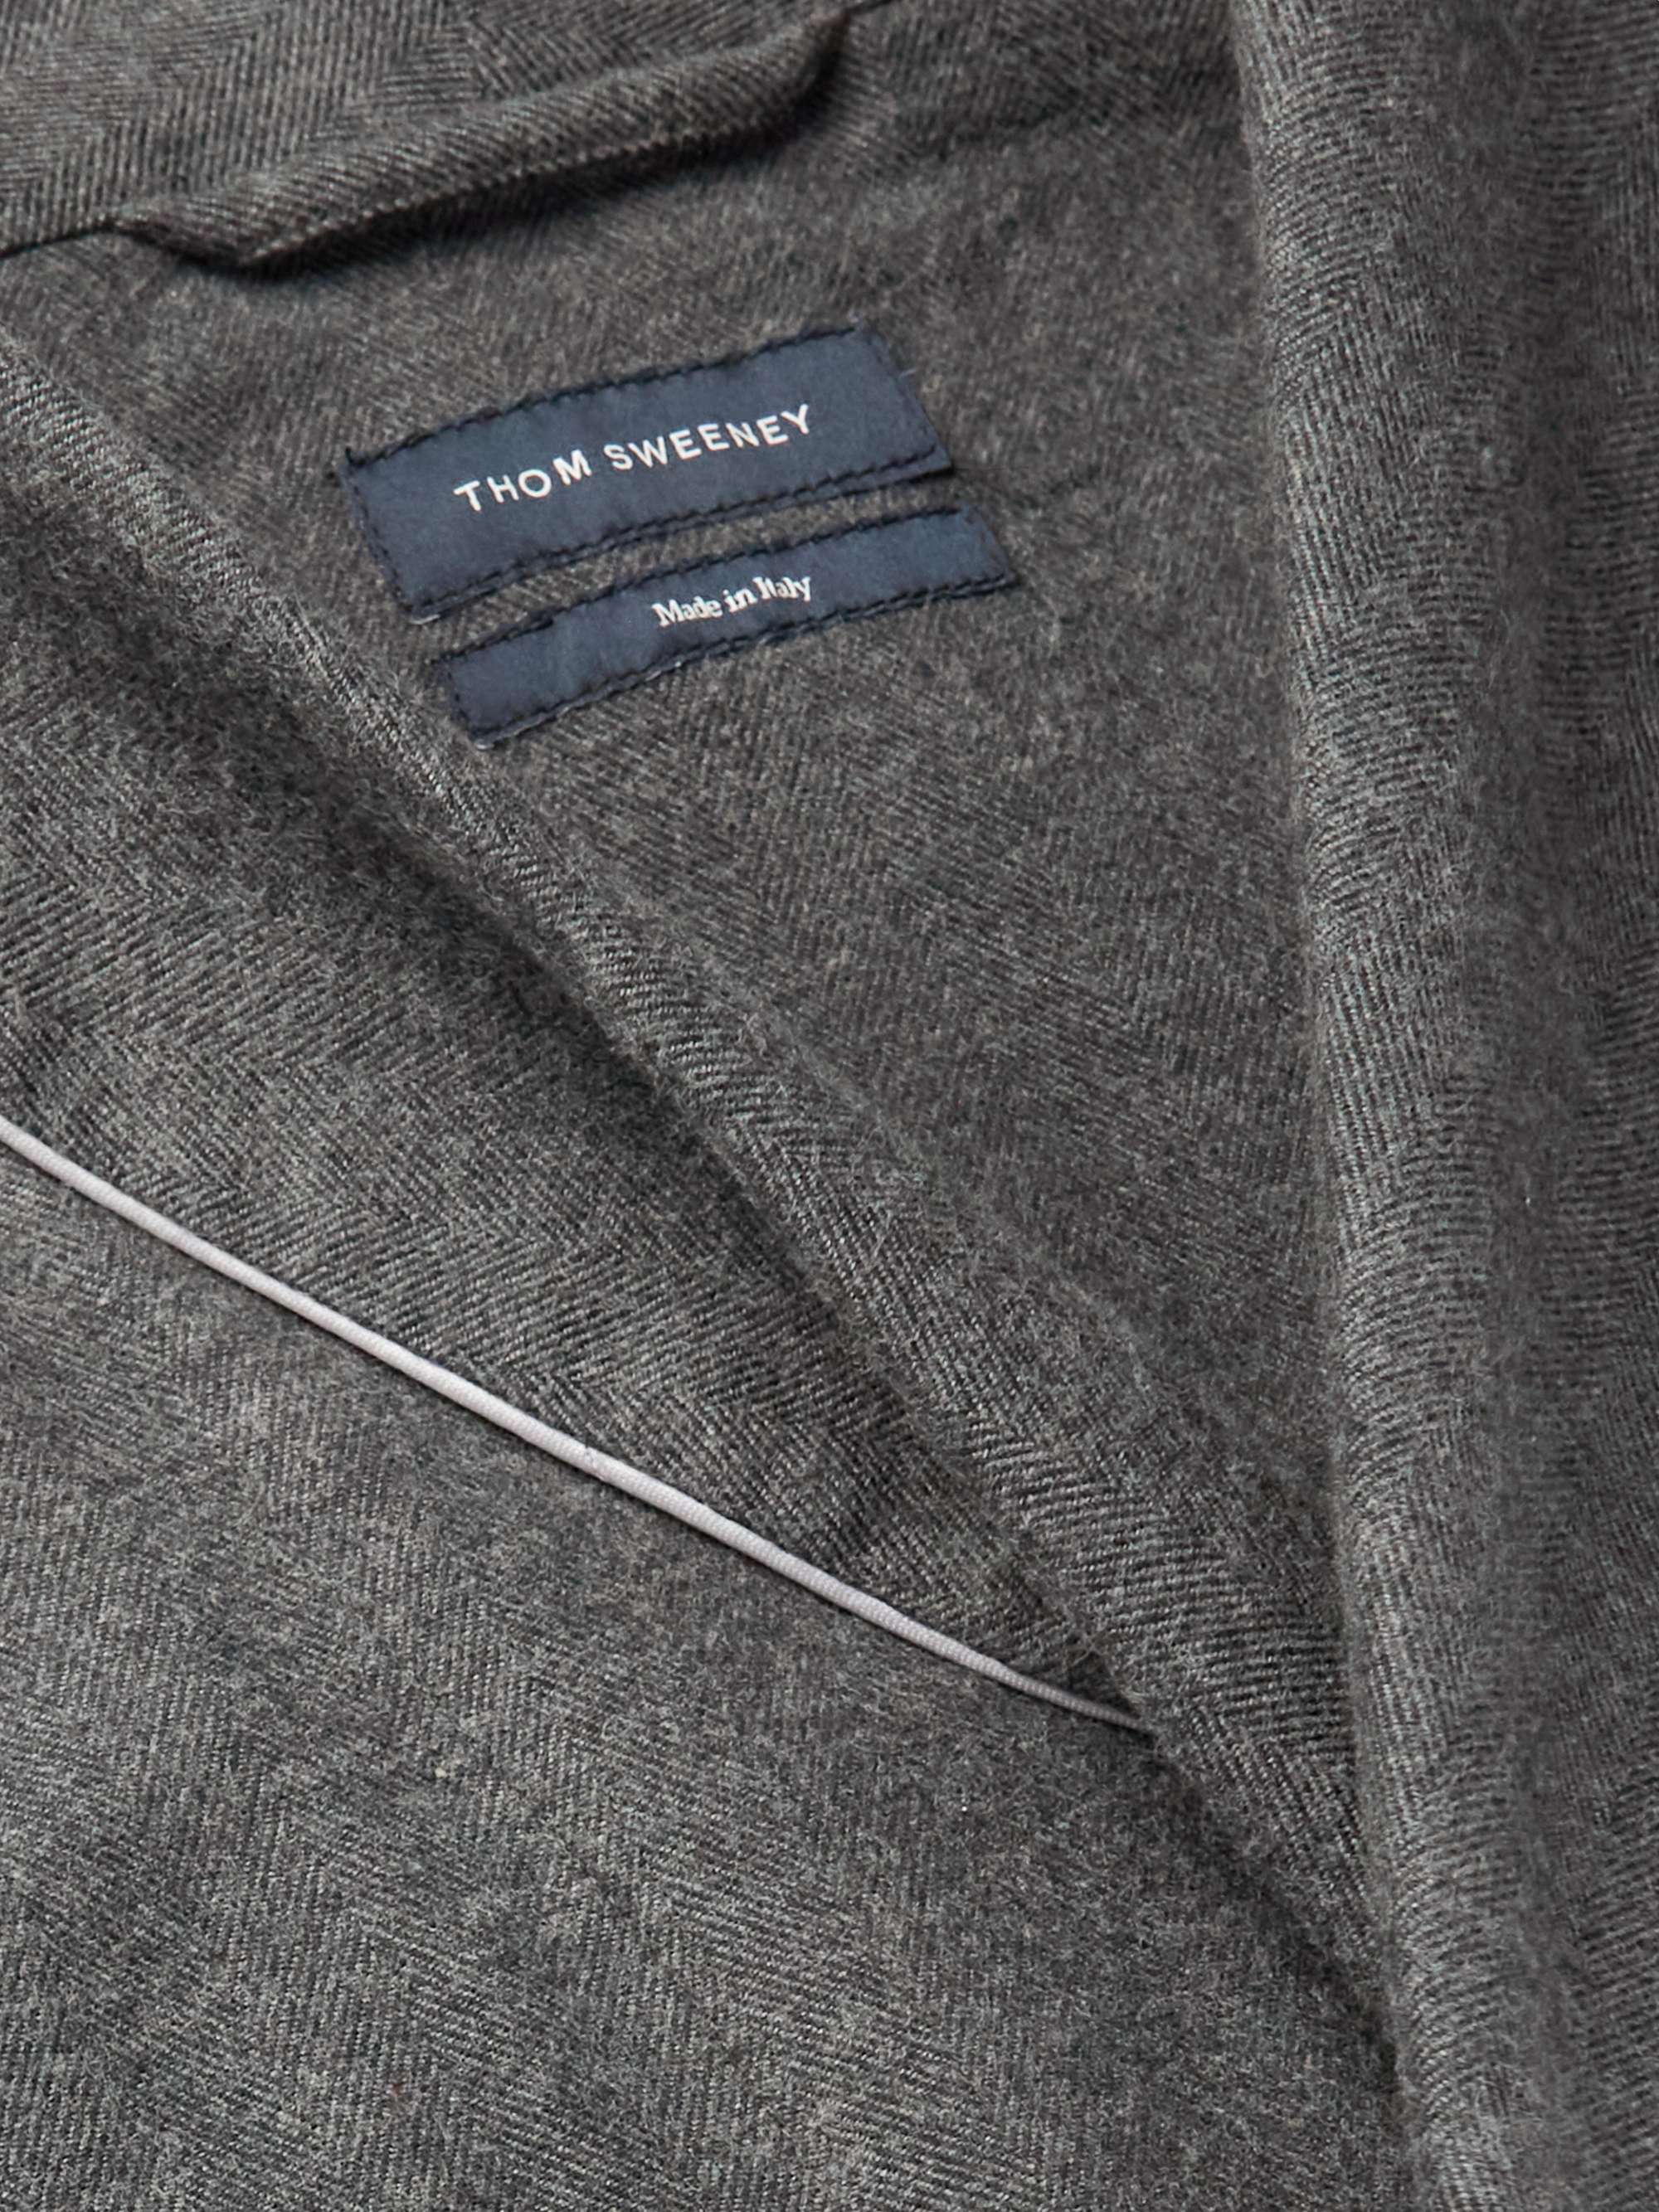 THOM SWEENEY Herringbone Cotton-Flannel Robe